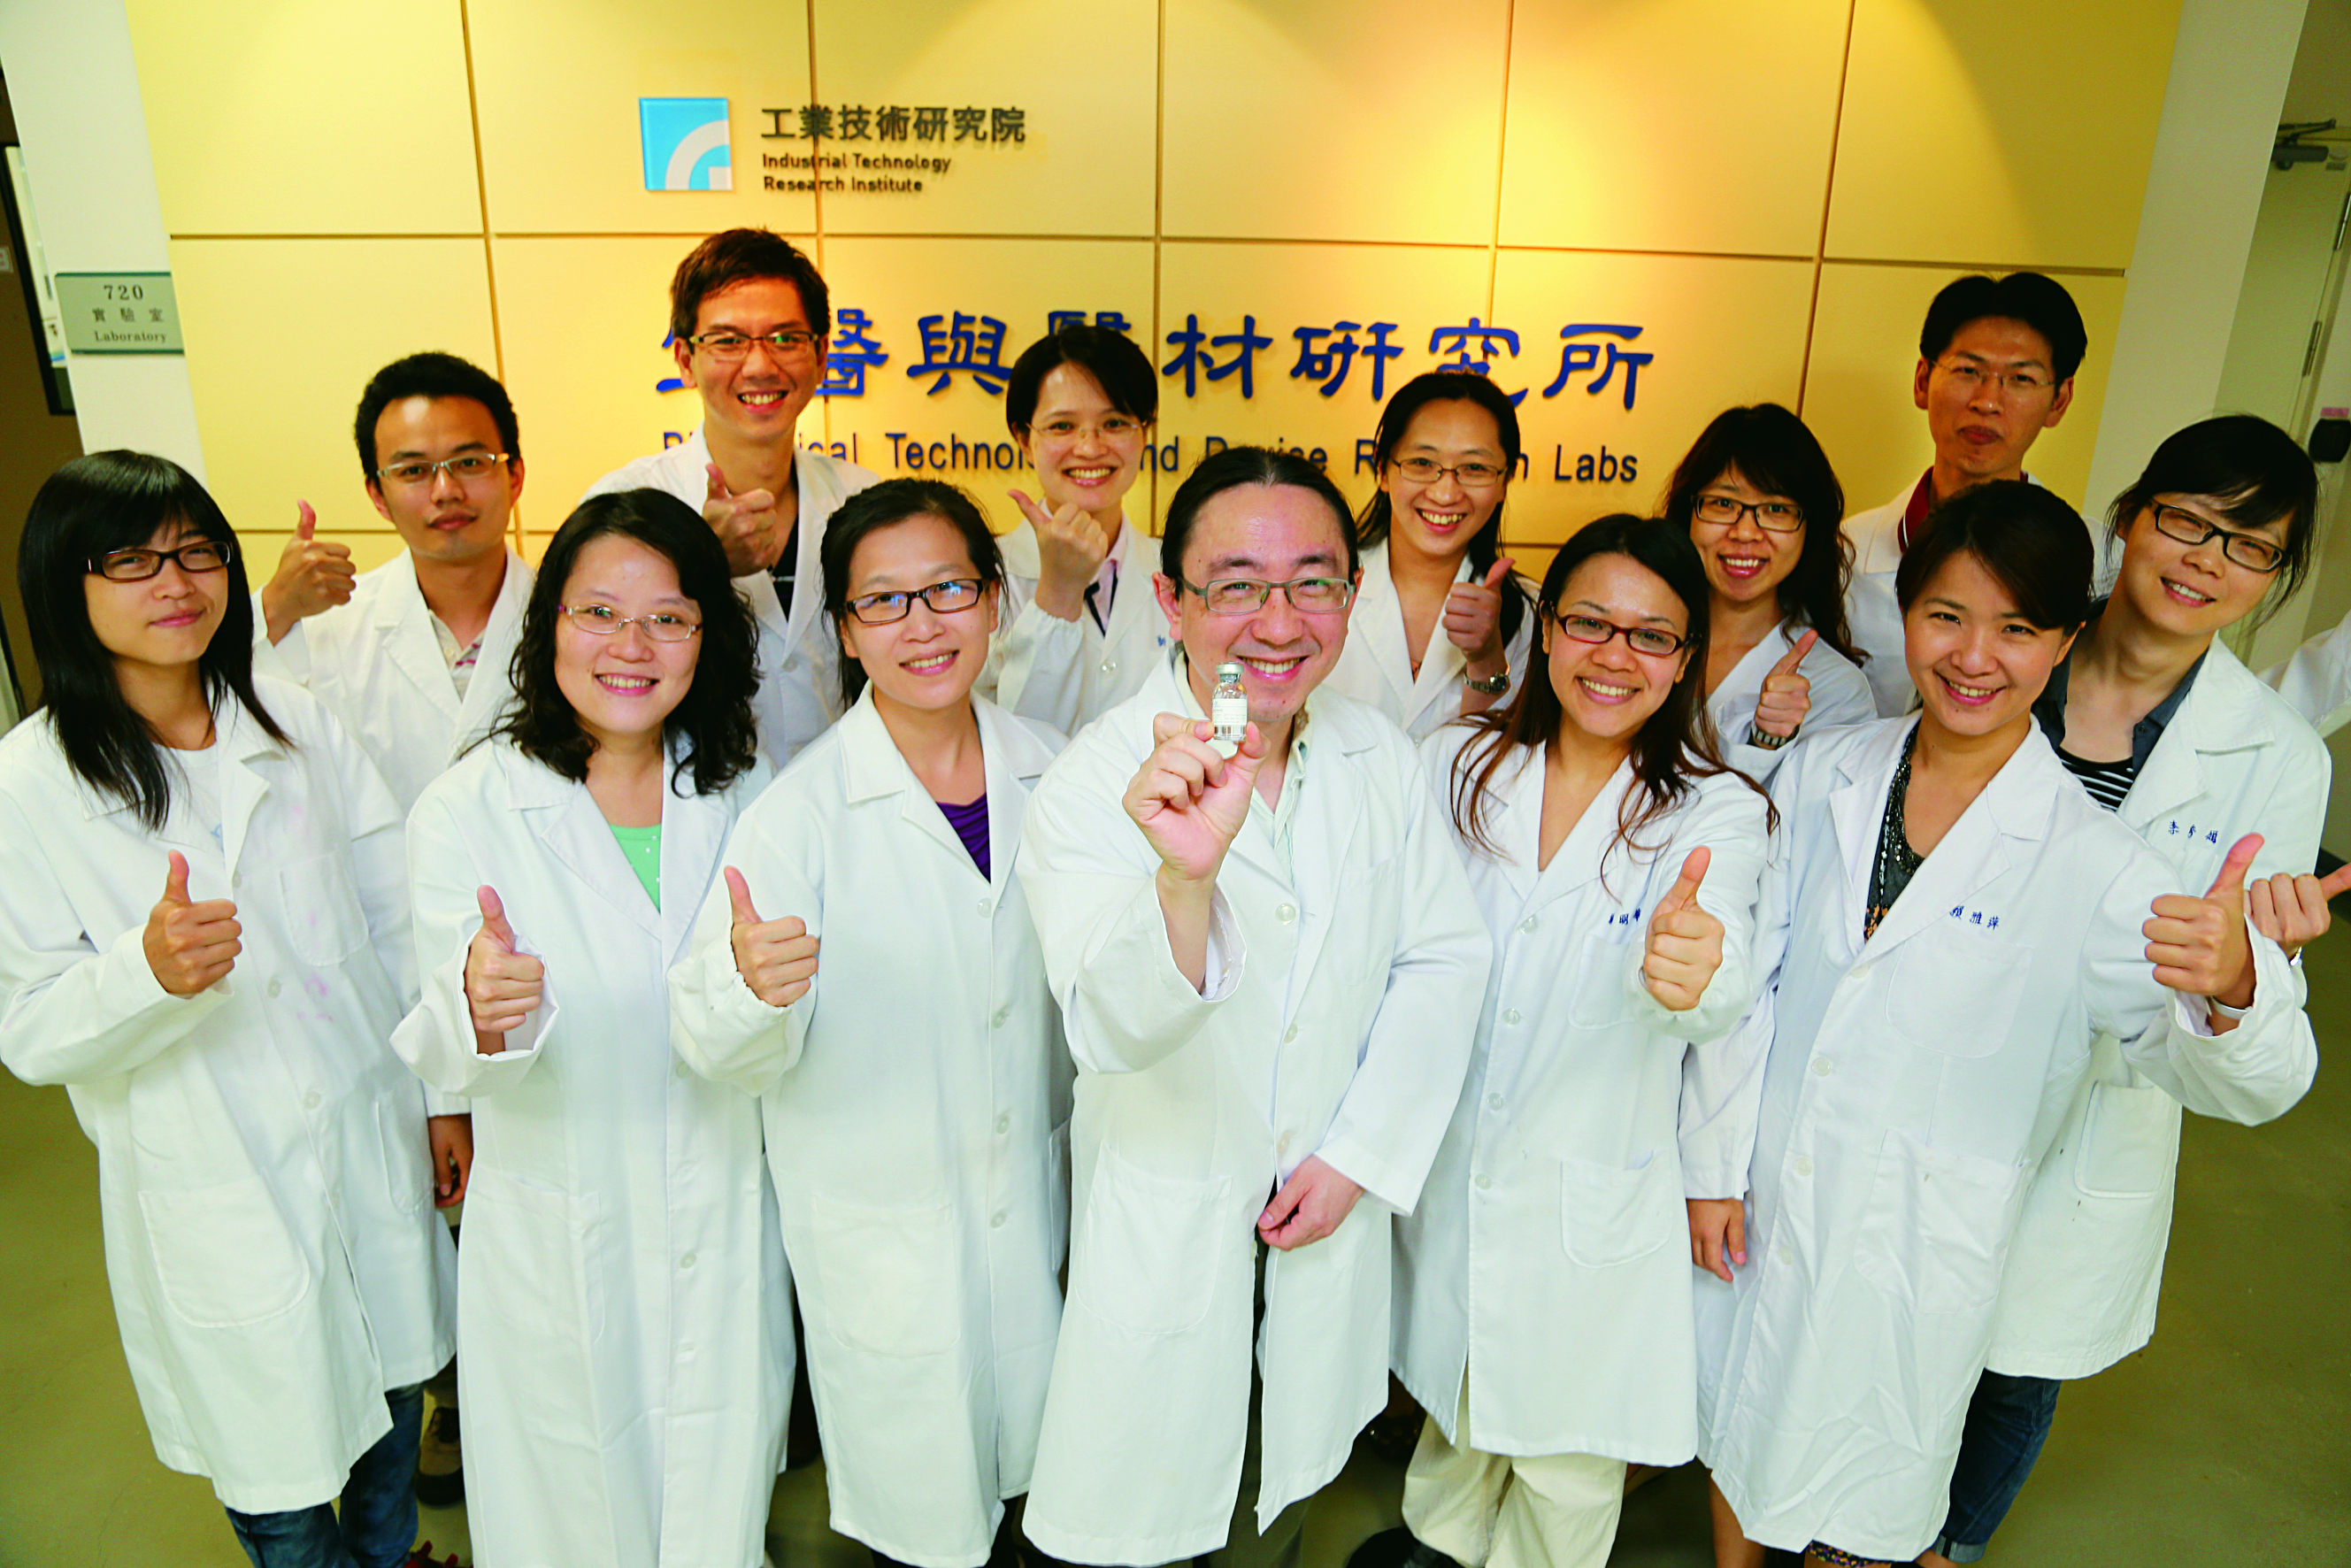 工研院研發團隊在膠原蛋白支架融合技術領域中，不斷地研發與精進，成功地讓世界看見臺灣生技的能量。